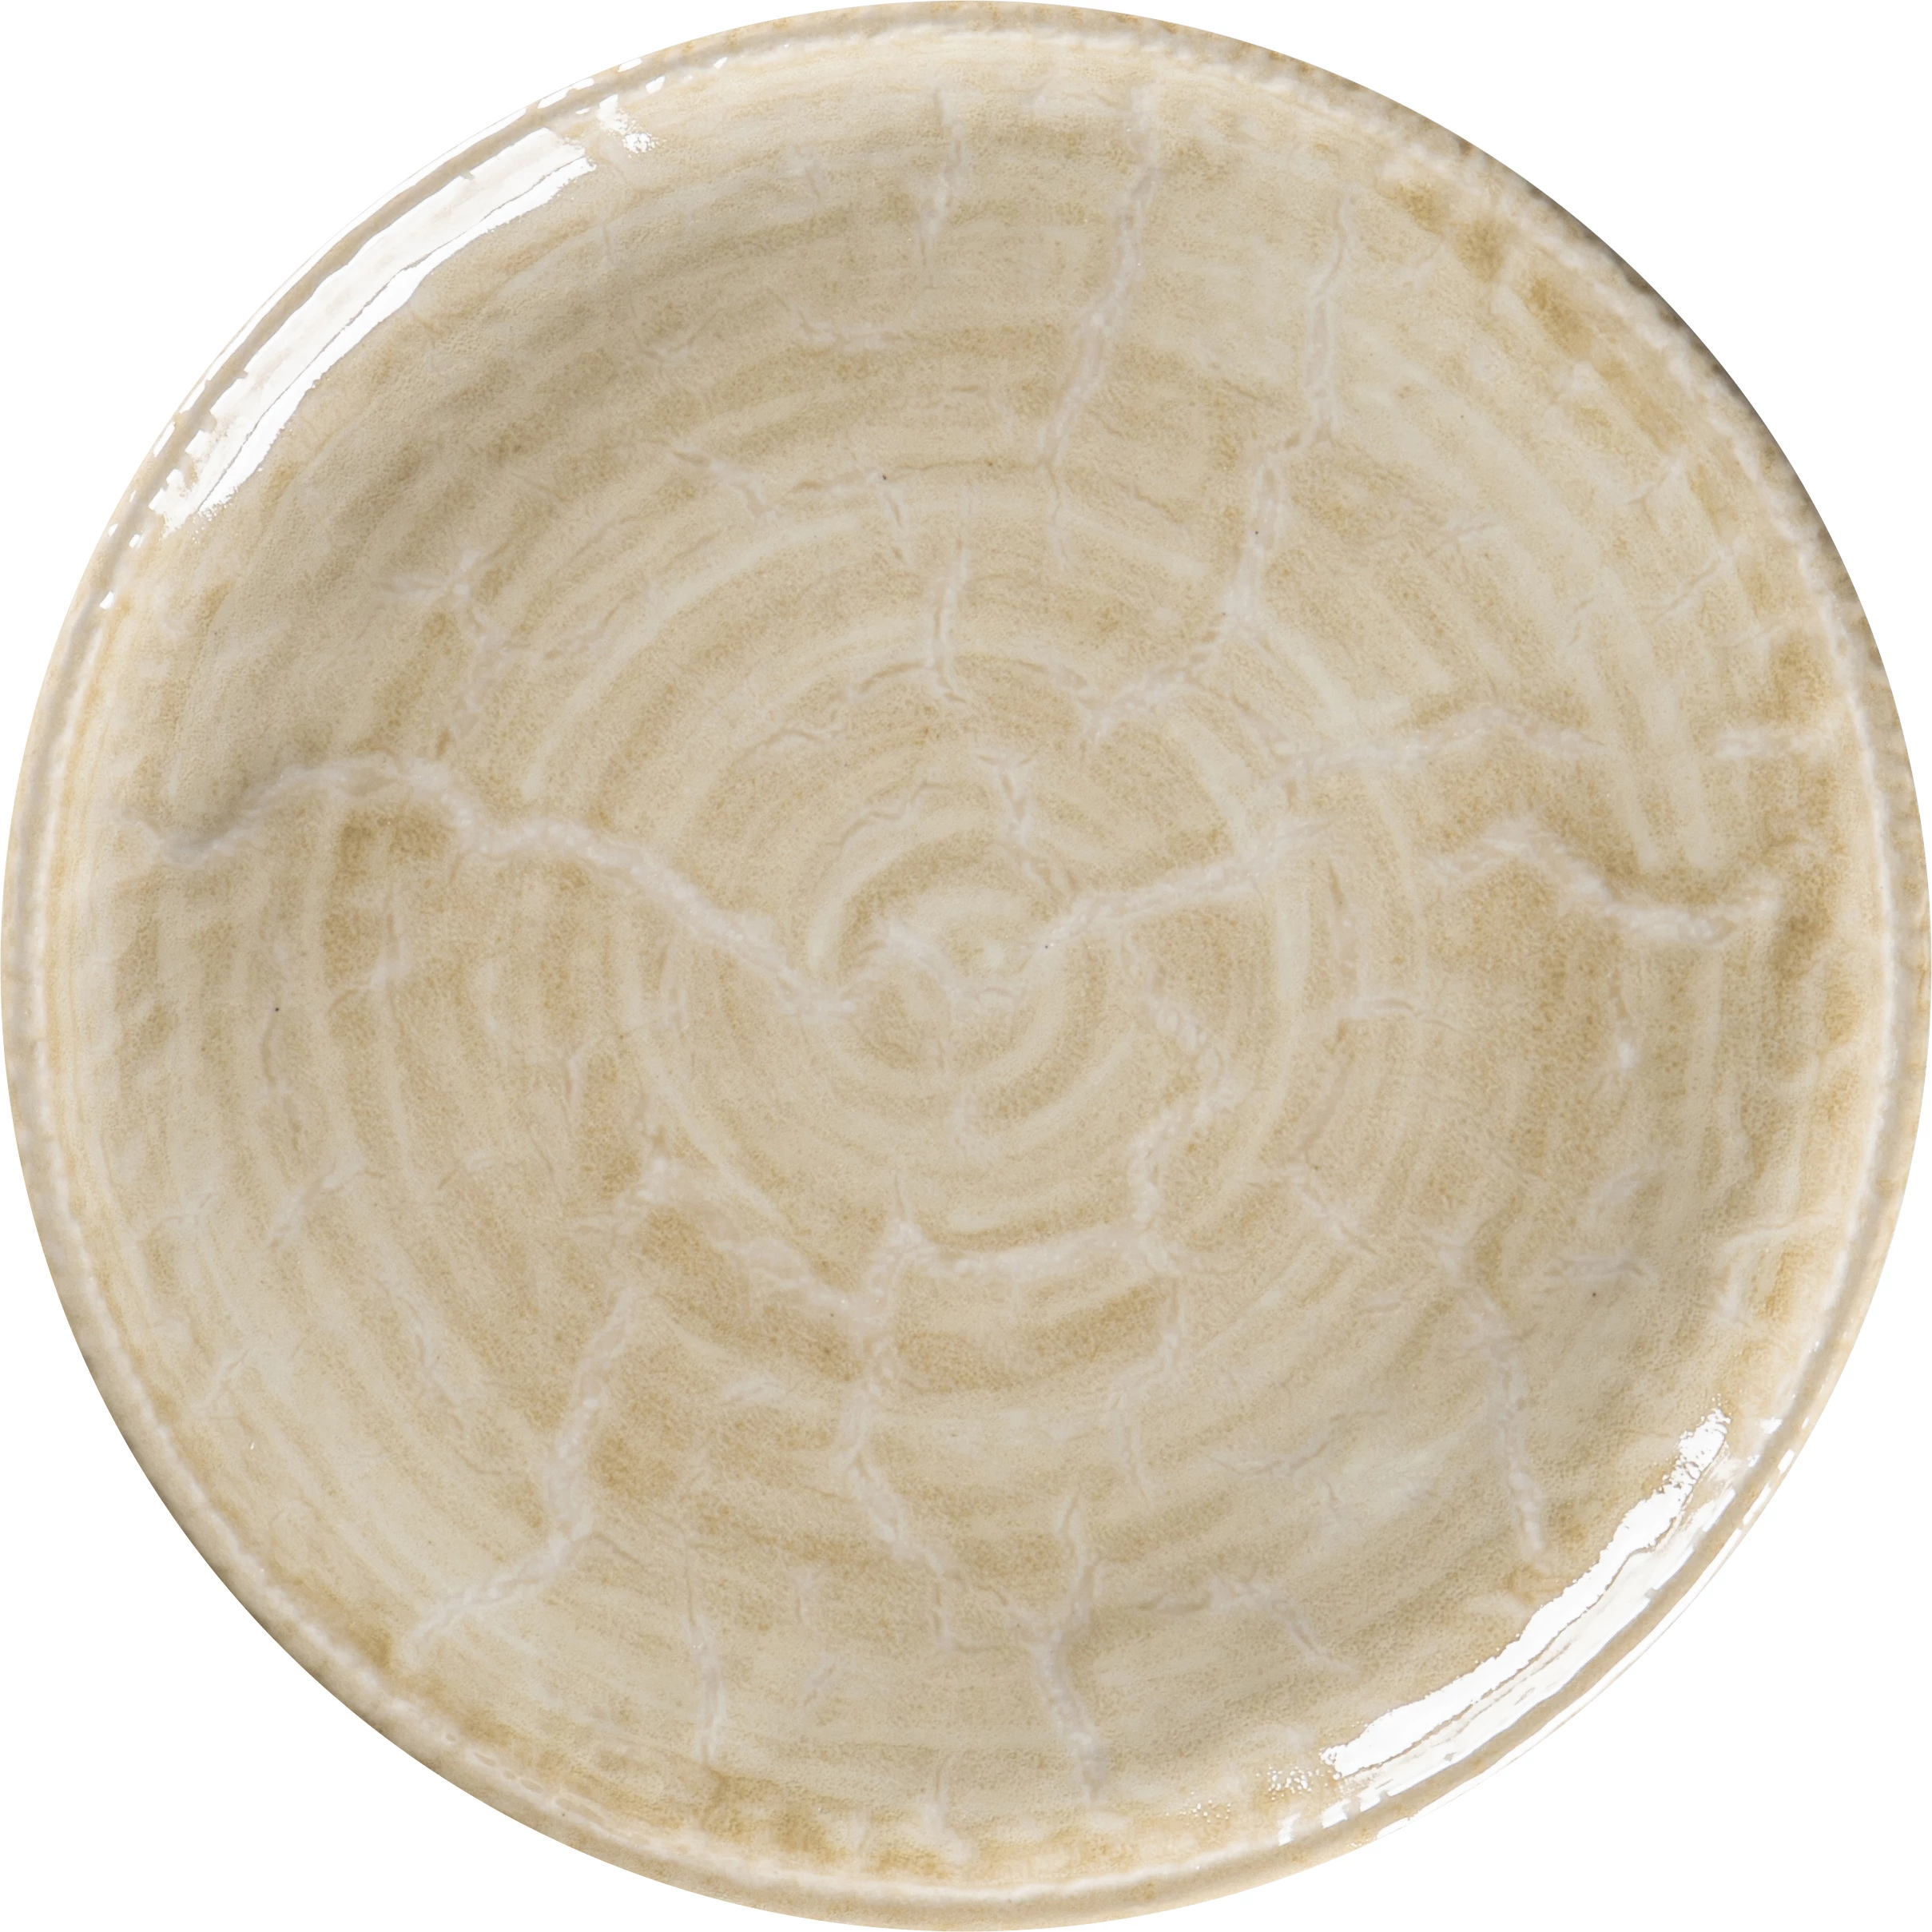 RAK Krush flad tallerken uden fane, sand, ø20,9 cm